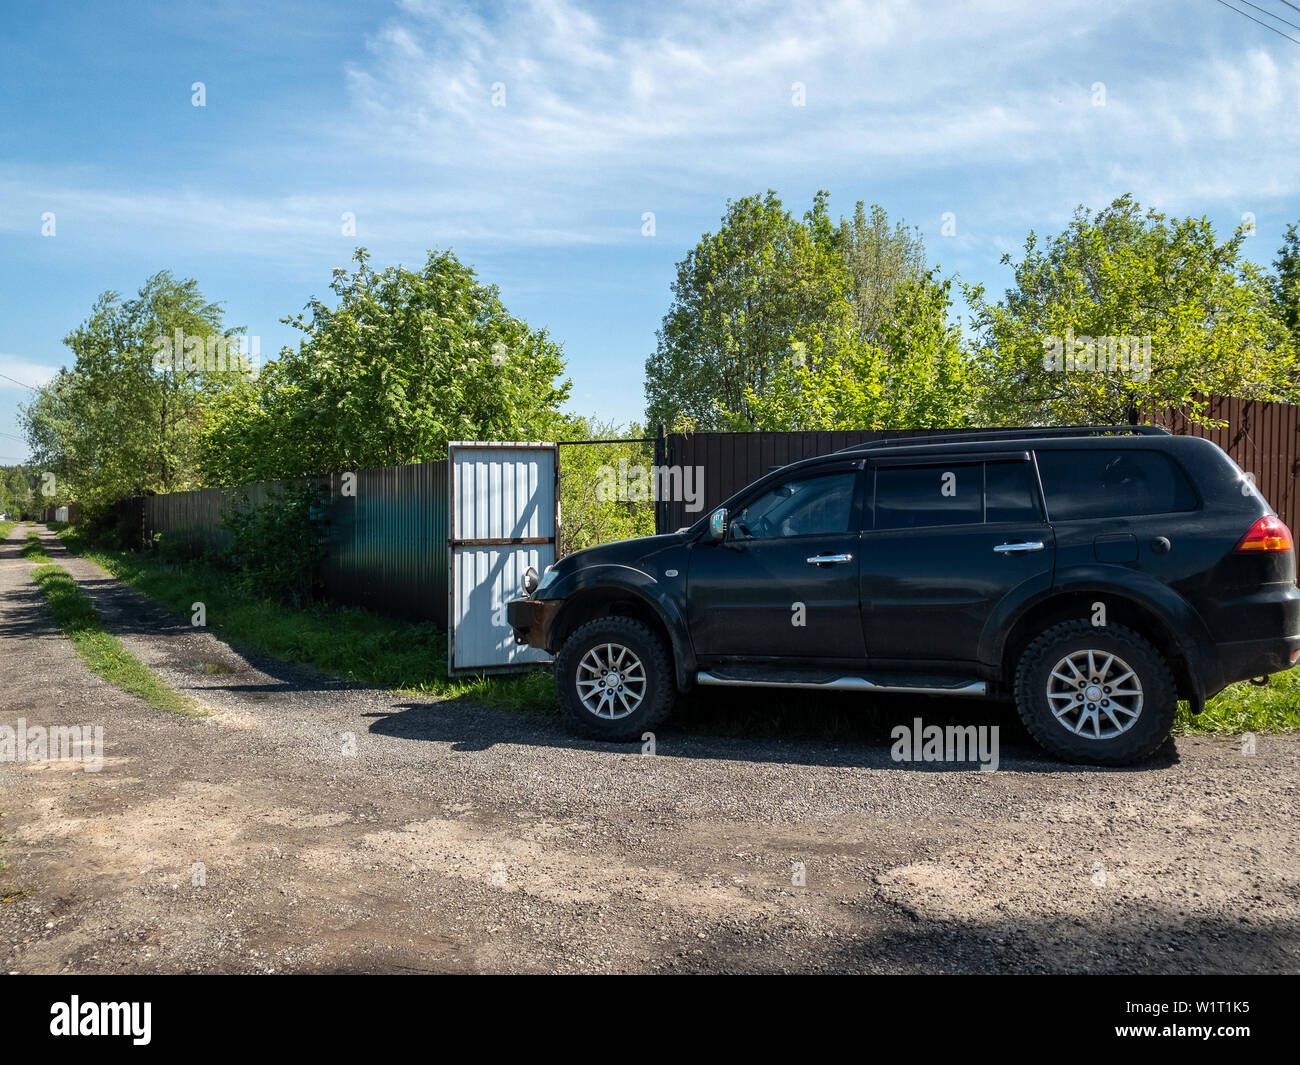 Moscou, Russie - 24 mai 2019 : Noir Mitsubishi Pajero Sport voiture garée près de la clôture d'une maison de campagne Banque D'Images